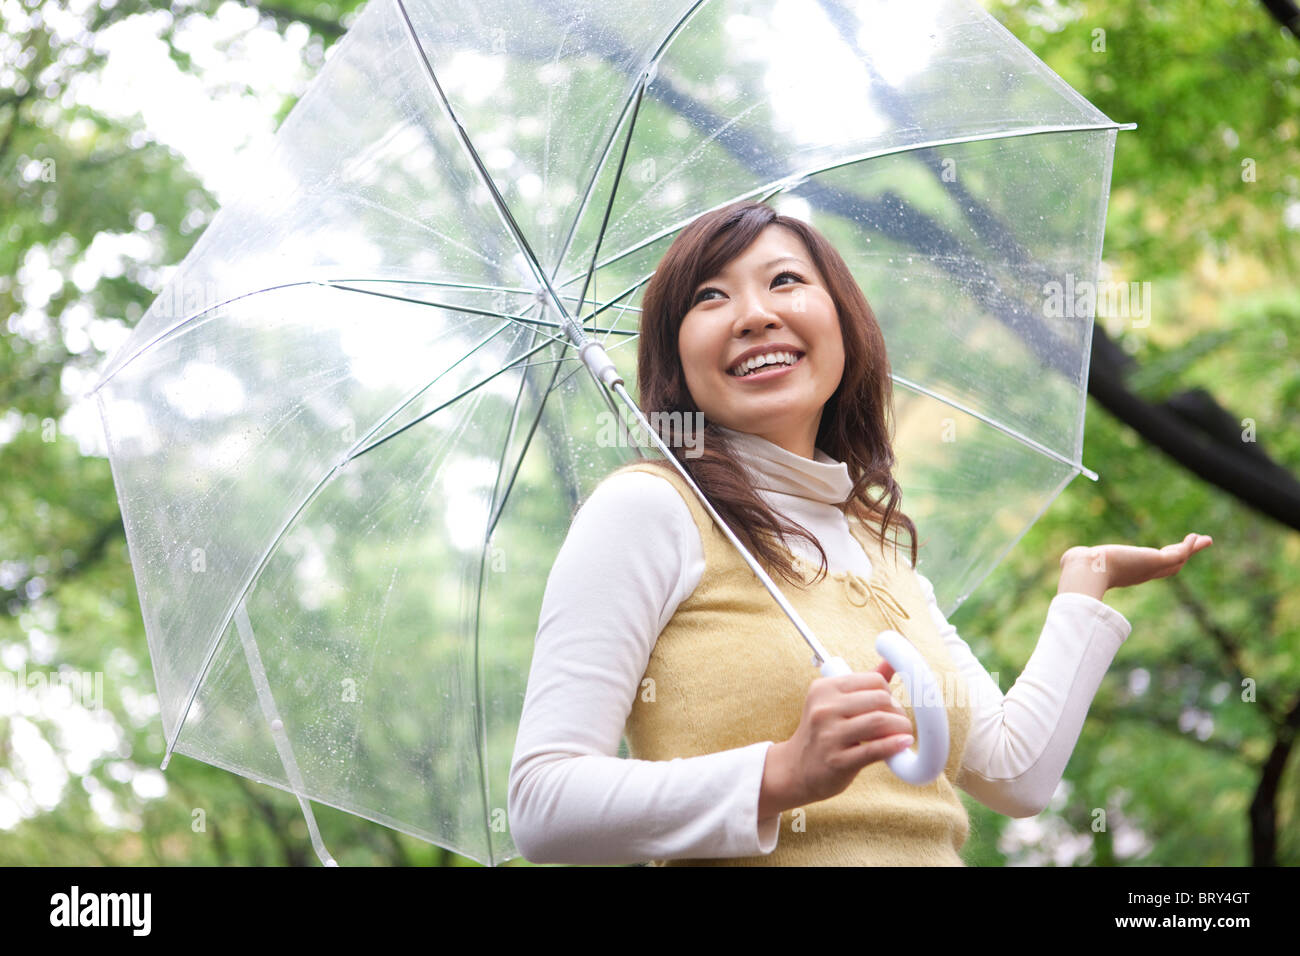 Jeune femme avec parapluie, smiling Banque D'Images